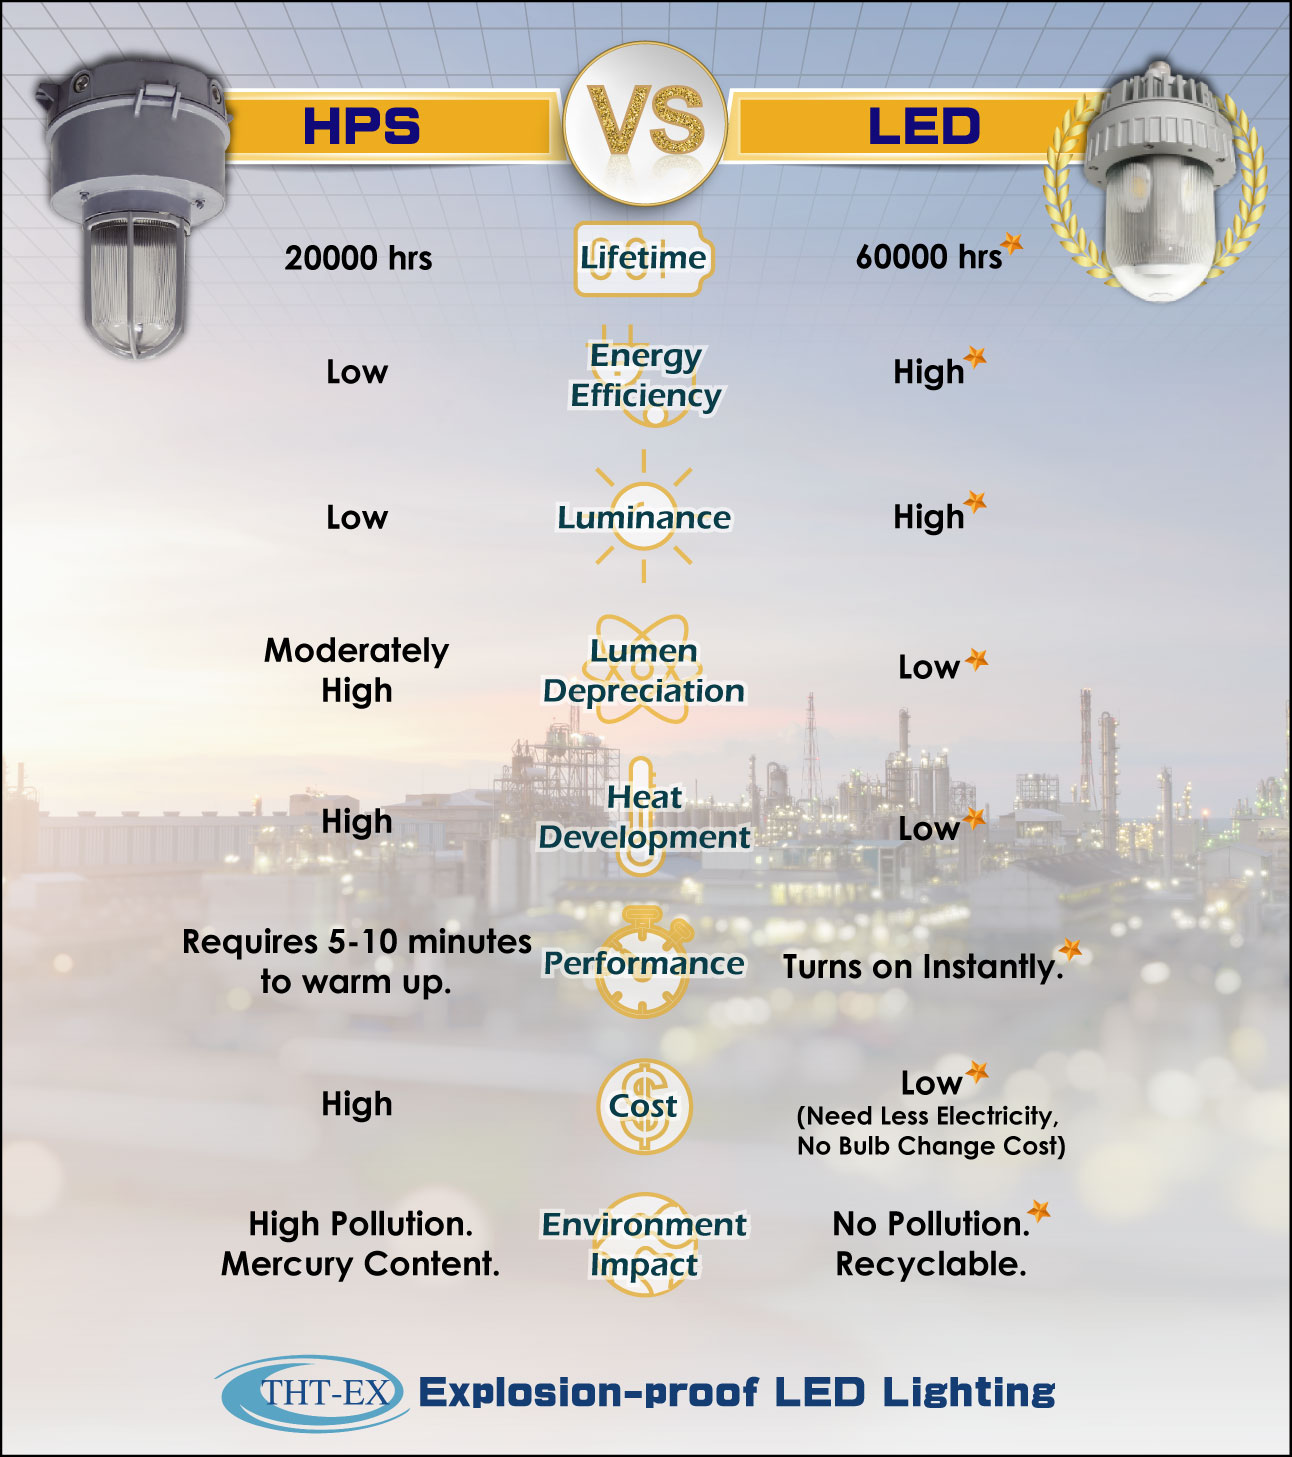 Explosion-proof LED Lighting VS. Explosion-proof HPS Lighting